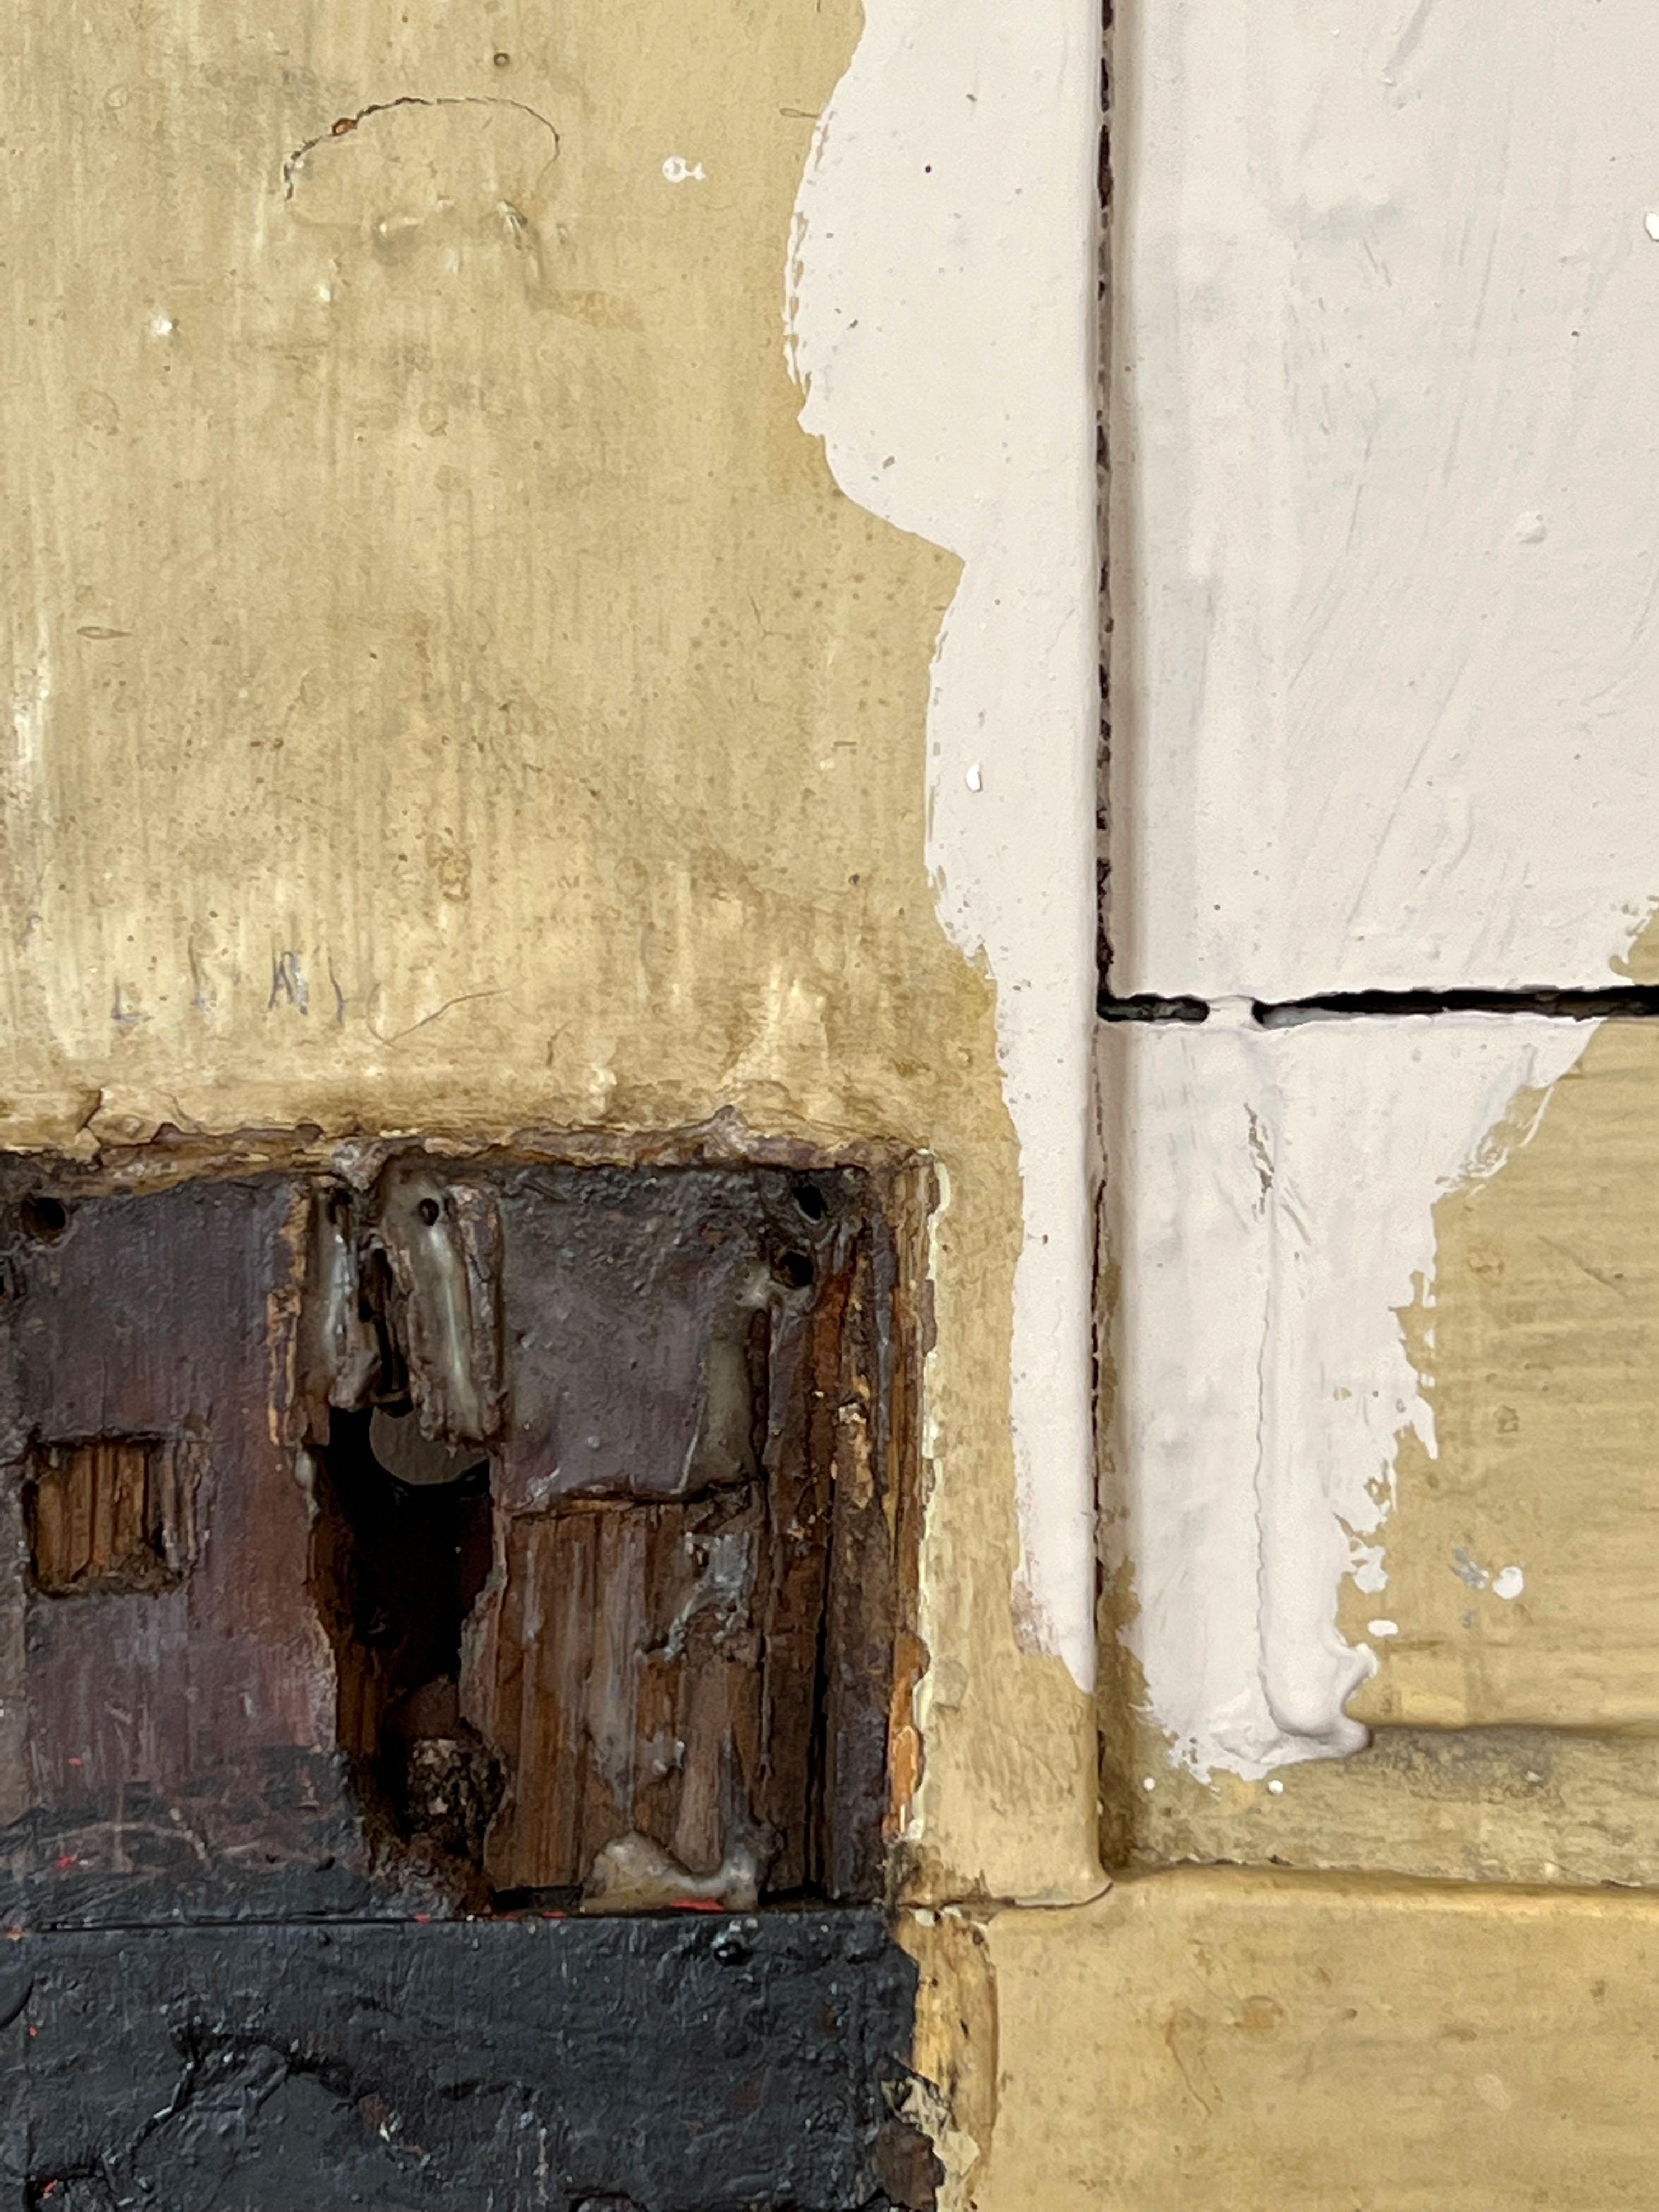 VITUS
2022
Paris, Frankreich

Ein kühnes und grafisches Gemälde, gemalt mit Acryl auf einer getäfelten antiken Tür.  Die schöne Patina und die maßstabsgetreue Form der Tür dienen als Kulisse. Das Werk zeigt abstrakte schwarze und weiße Formen und